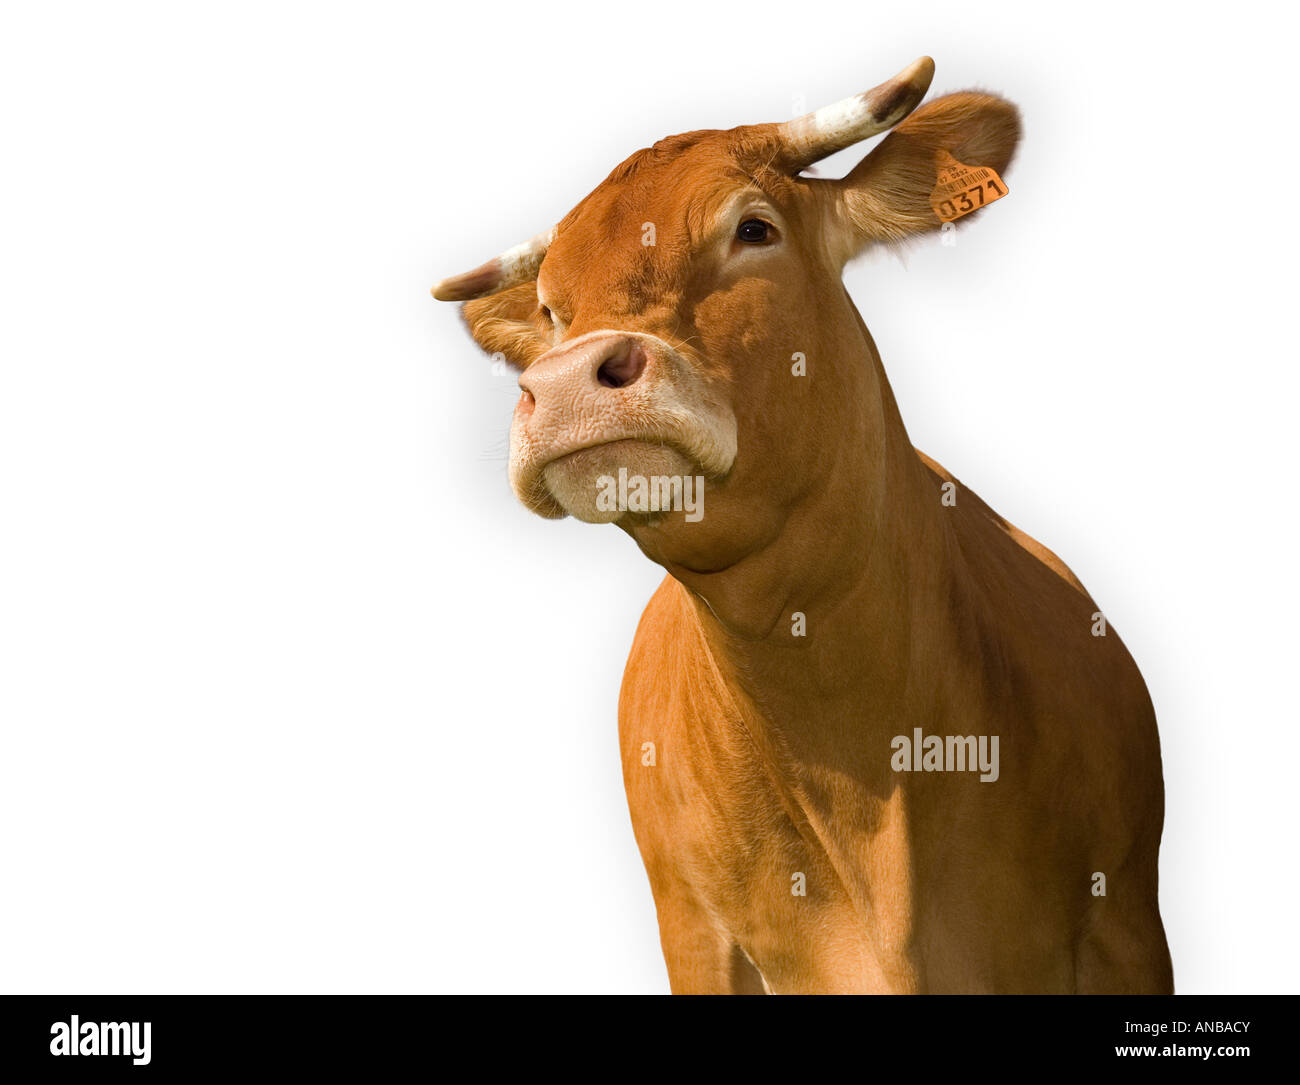 Un ritaglio di una mucca Limousin (Bos taurus domesticus), Vache (Bos taurus domesticus) de razza Limousine détourée sur fond blanc. Foto Stock